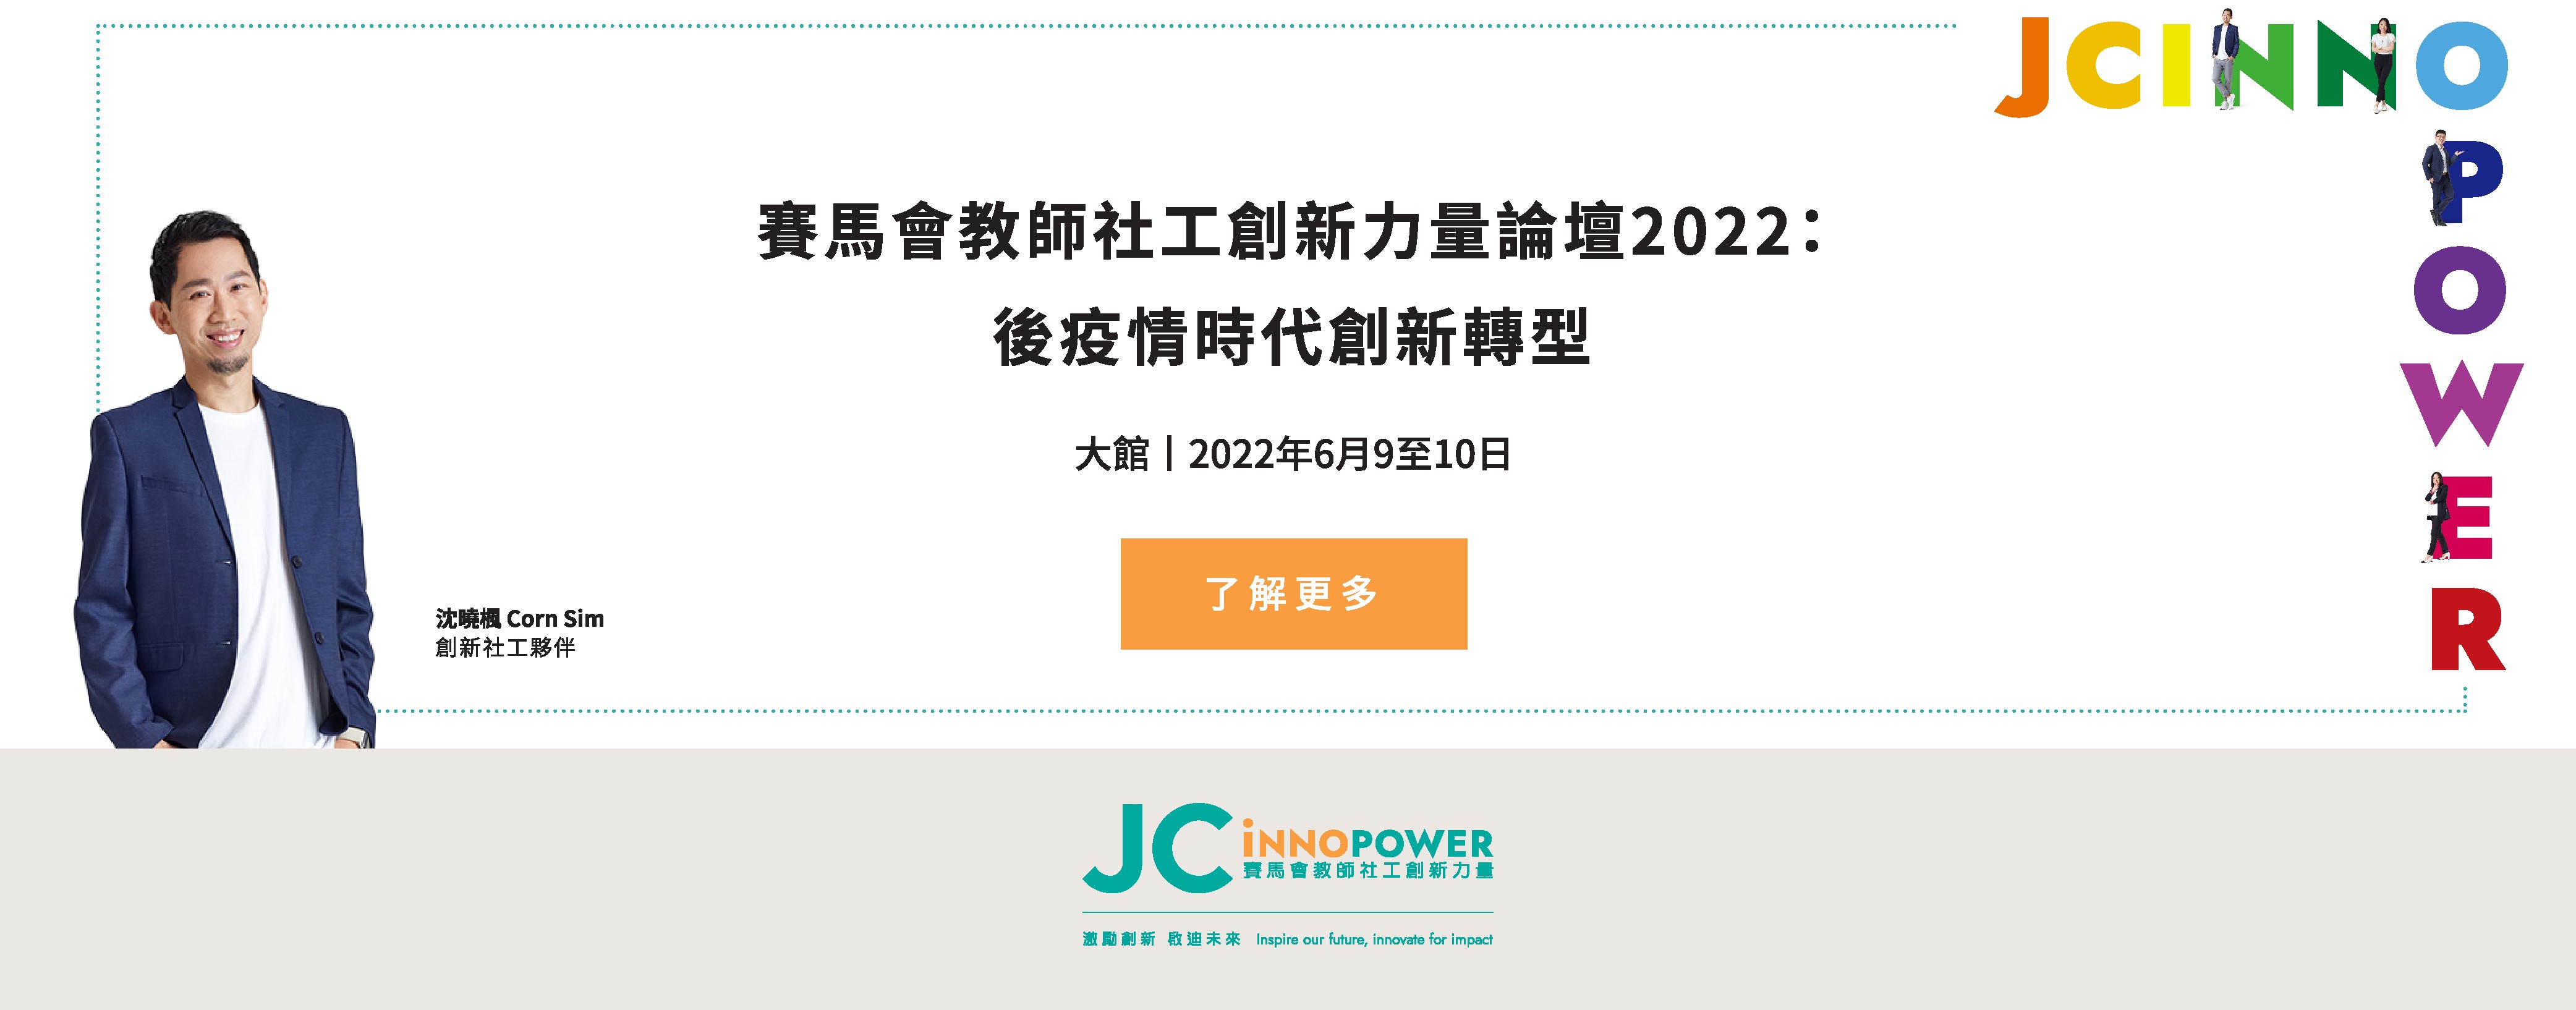 JC InnoPower Forum 2022 - Registration Now